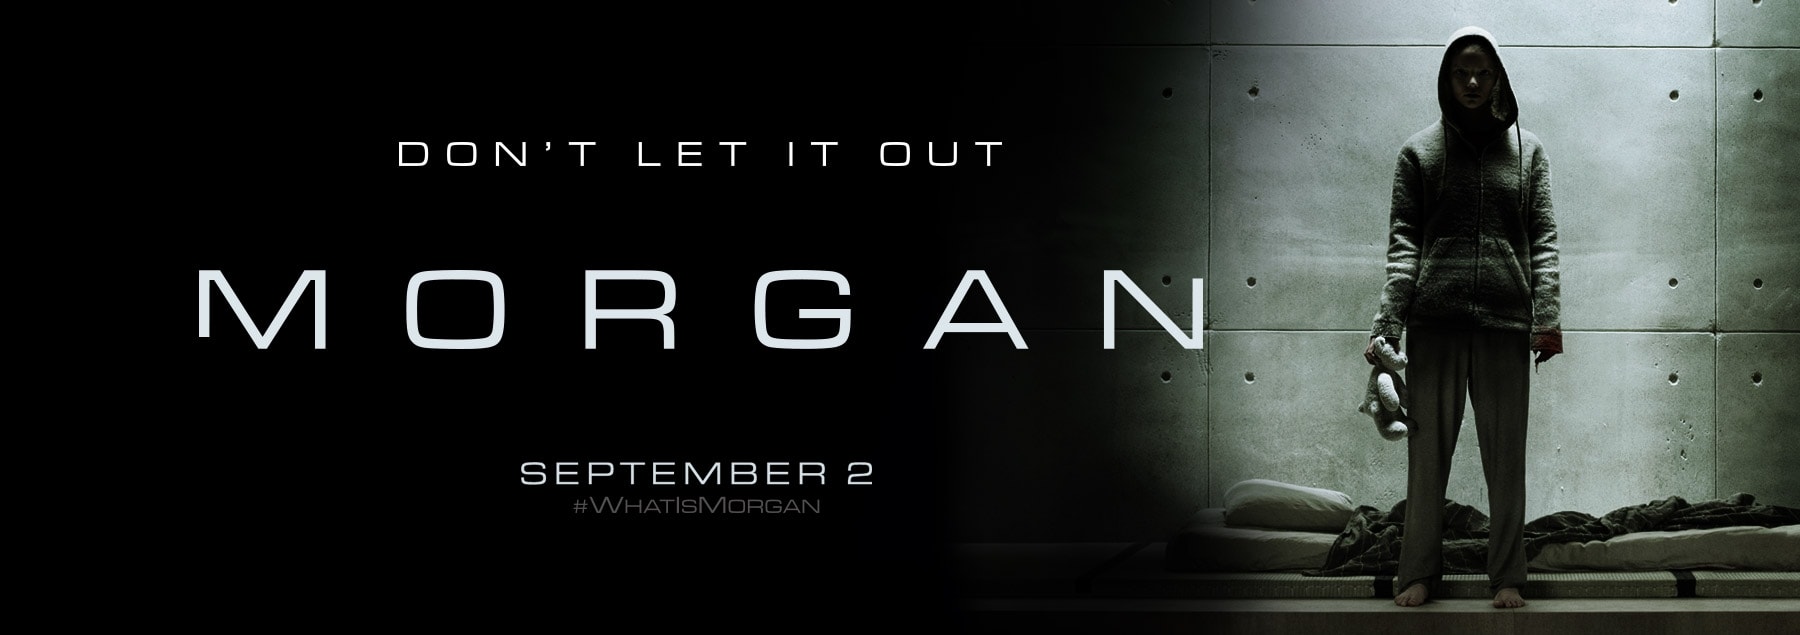 Morgan 4K 2016 big poster